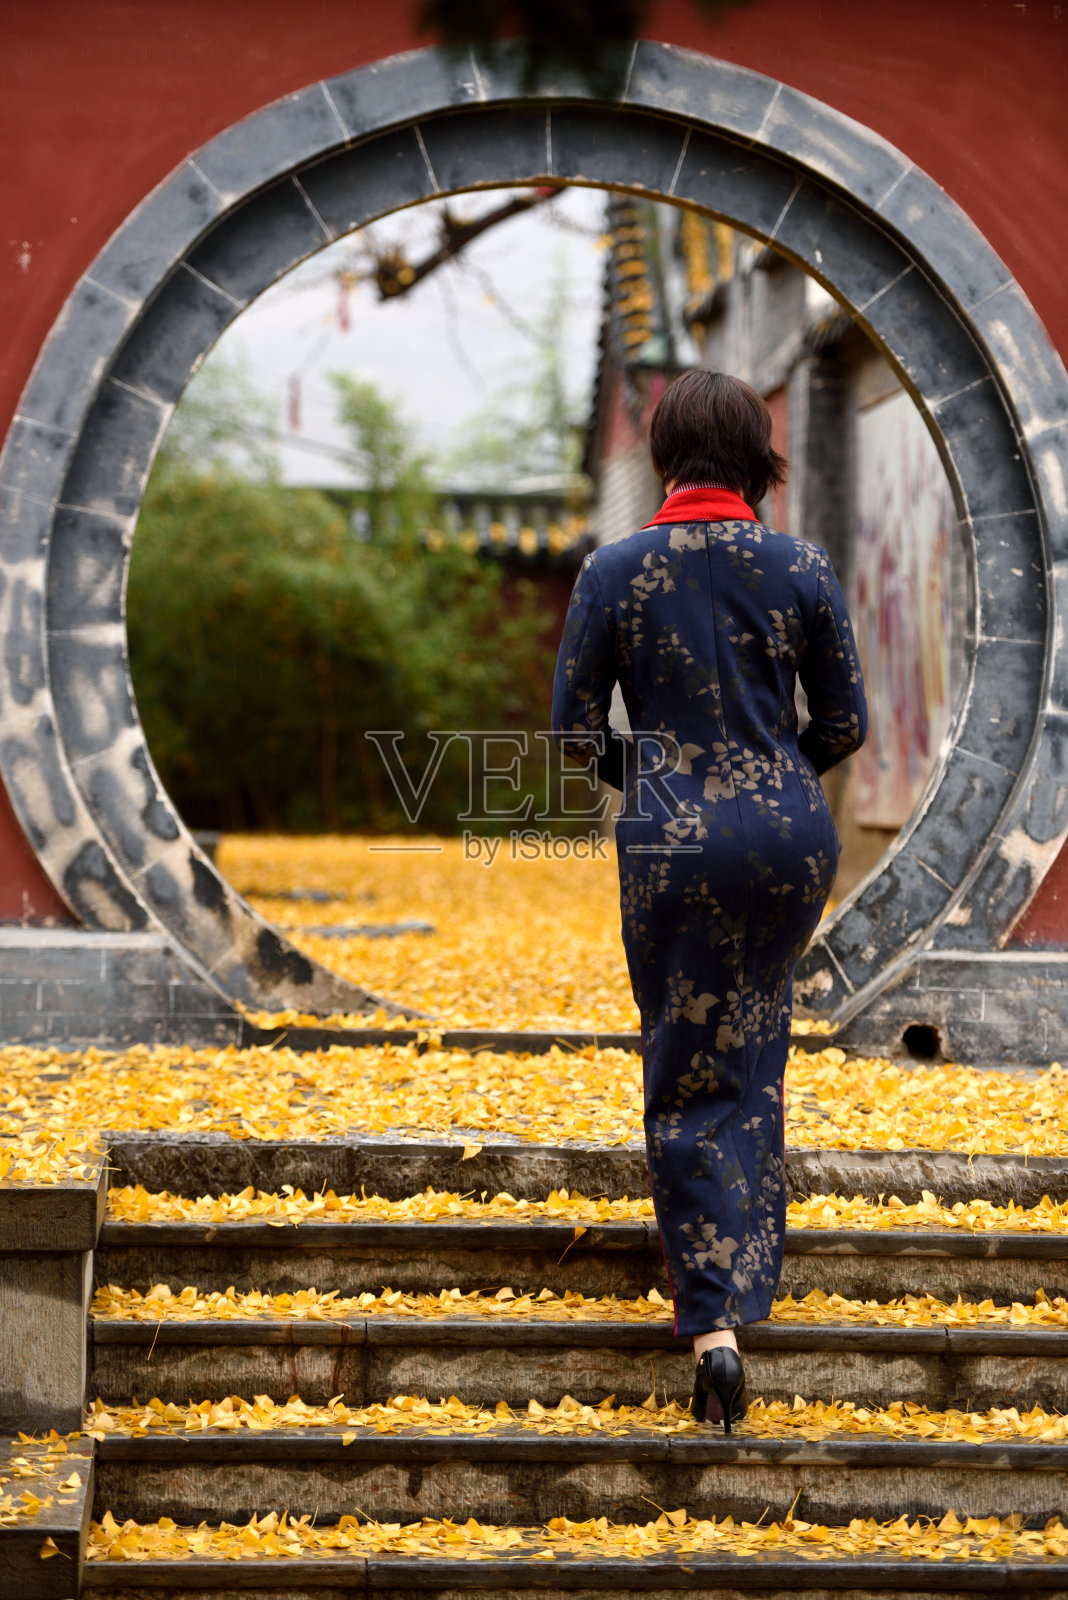 旗袍是一种具有典型中国元素的服装照片摄影图片